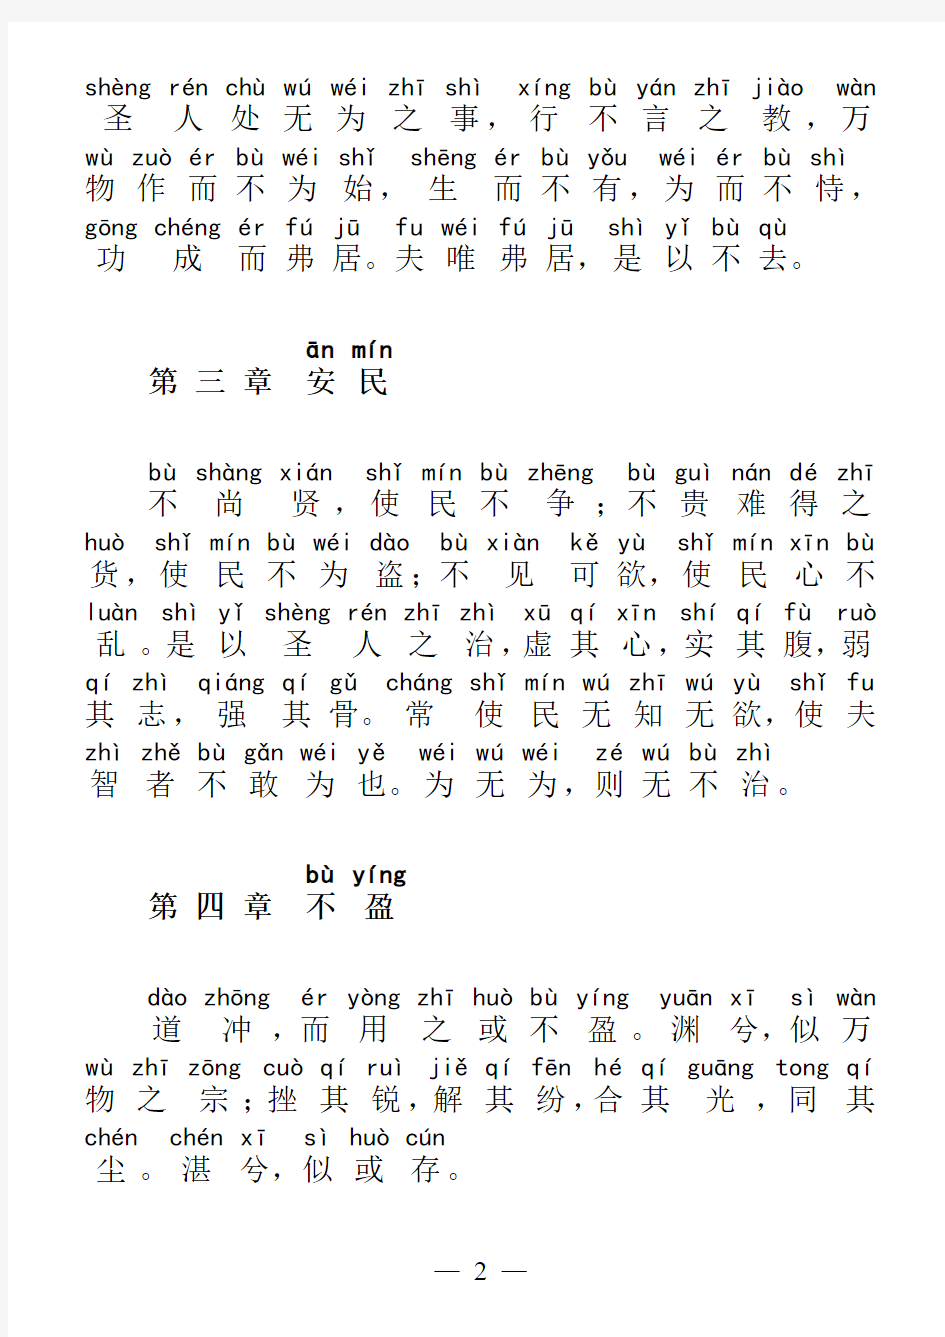 道德经原文拼音整理版(可直接打印)